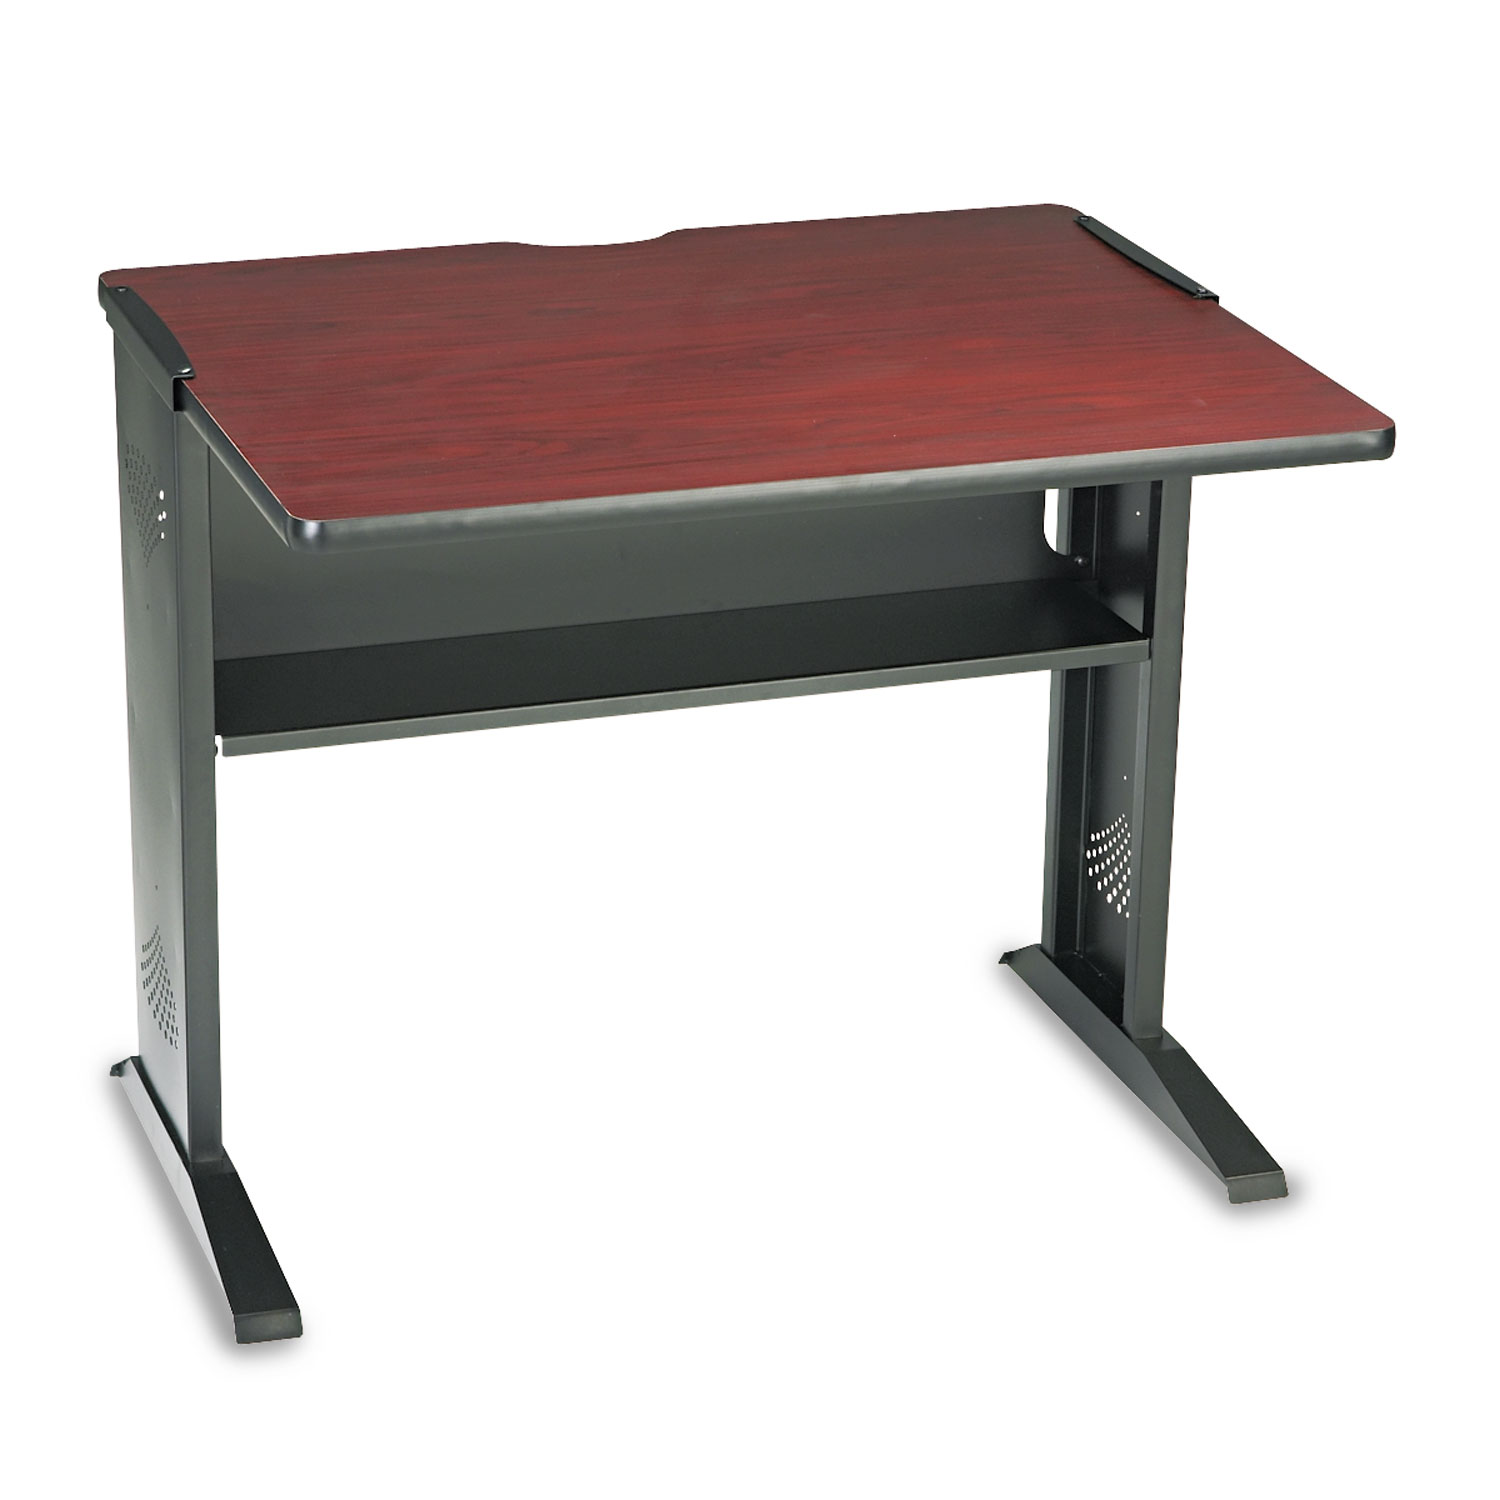  Safco 1930 Computer Desk with Reversible Top, 35.5w x 28d x 30h, Mahogany/Medium Oak/Black (SAF1930) 